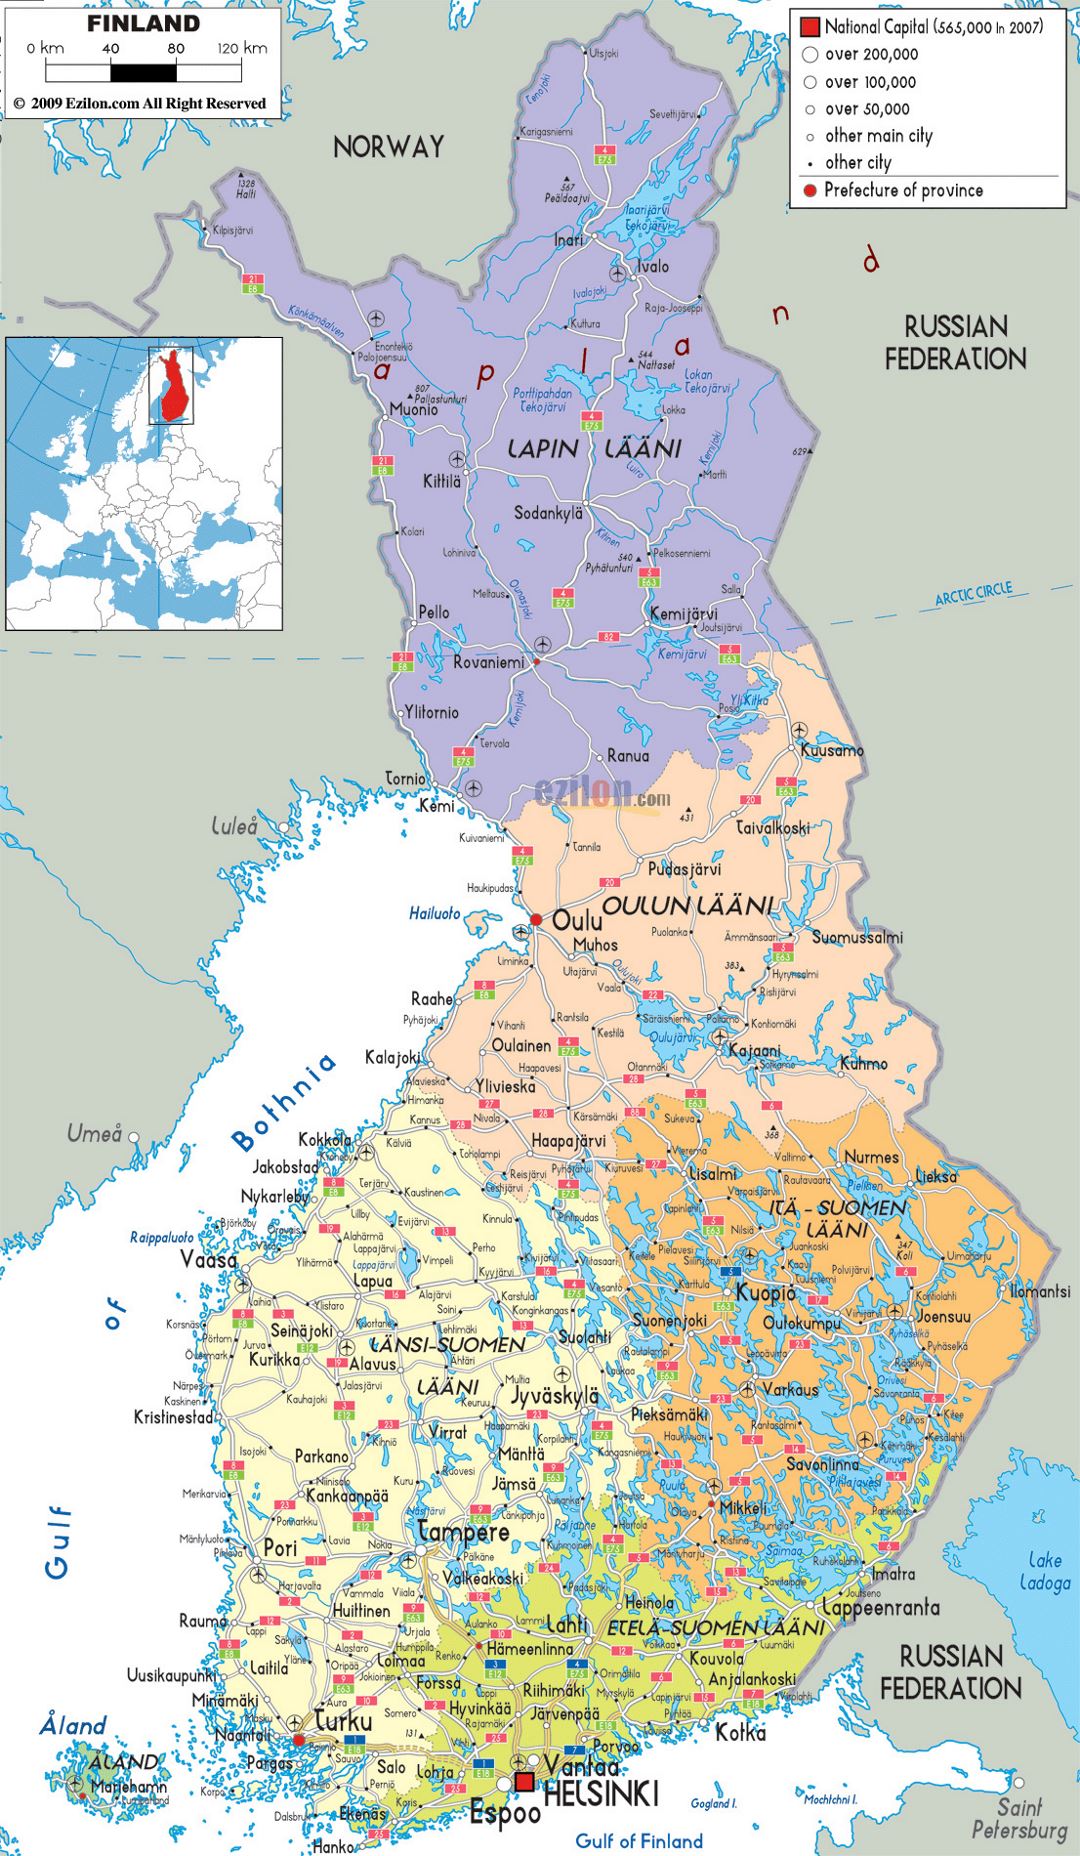 Mapa político y administrativo grande de Finlandia con carreteras, ciudades y aeropuertos